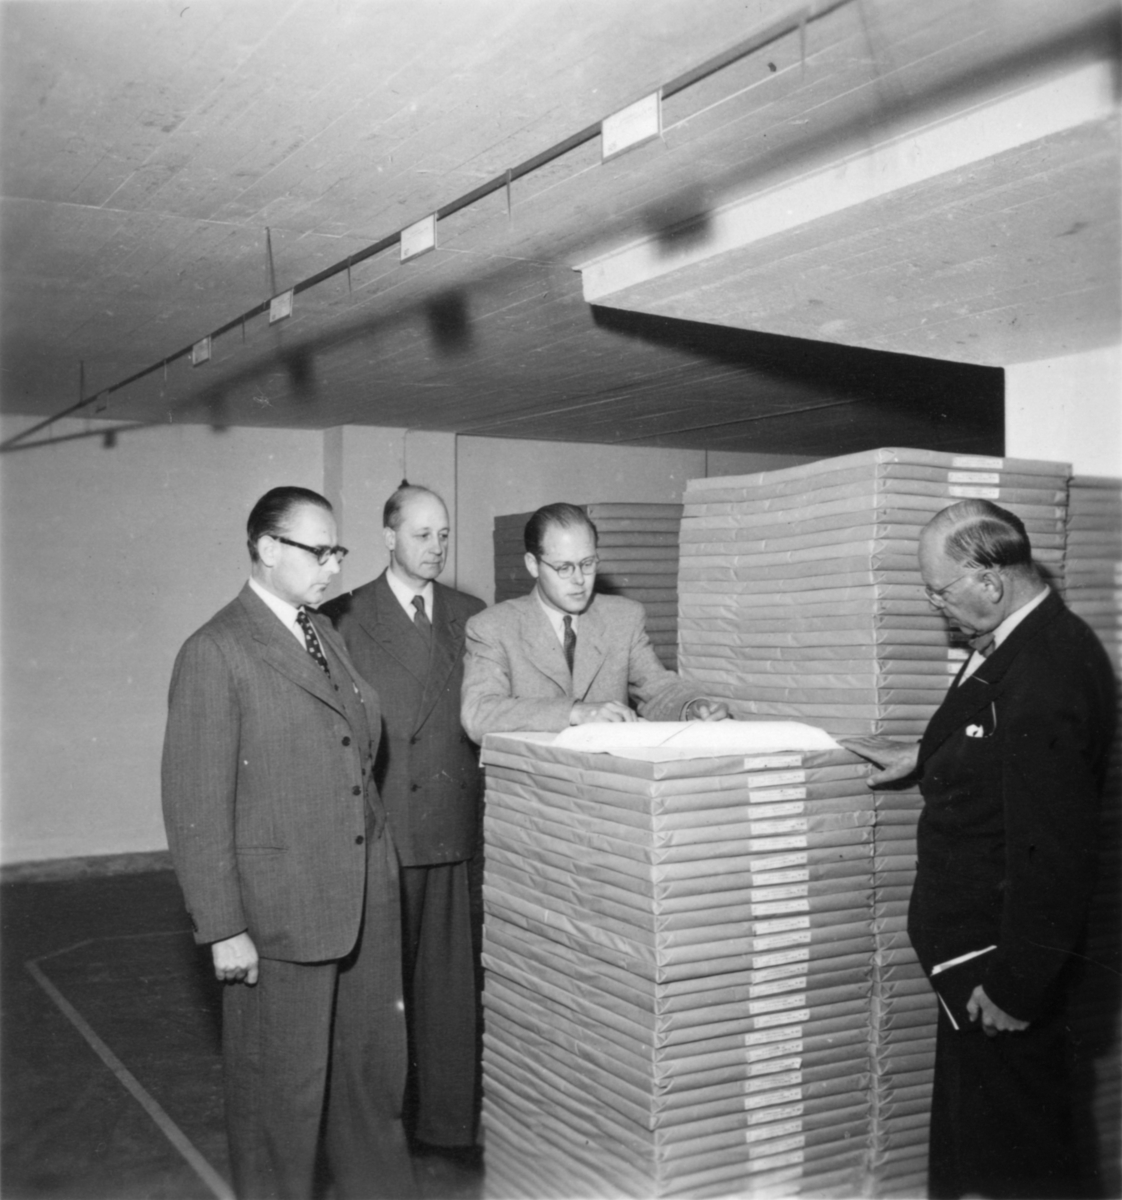 Från vänster: William Tibell, Gunnar Lalin, Paul Johansson och Thorsten Wettel. Dessa var ingenjörer.